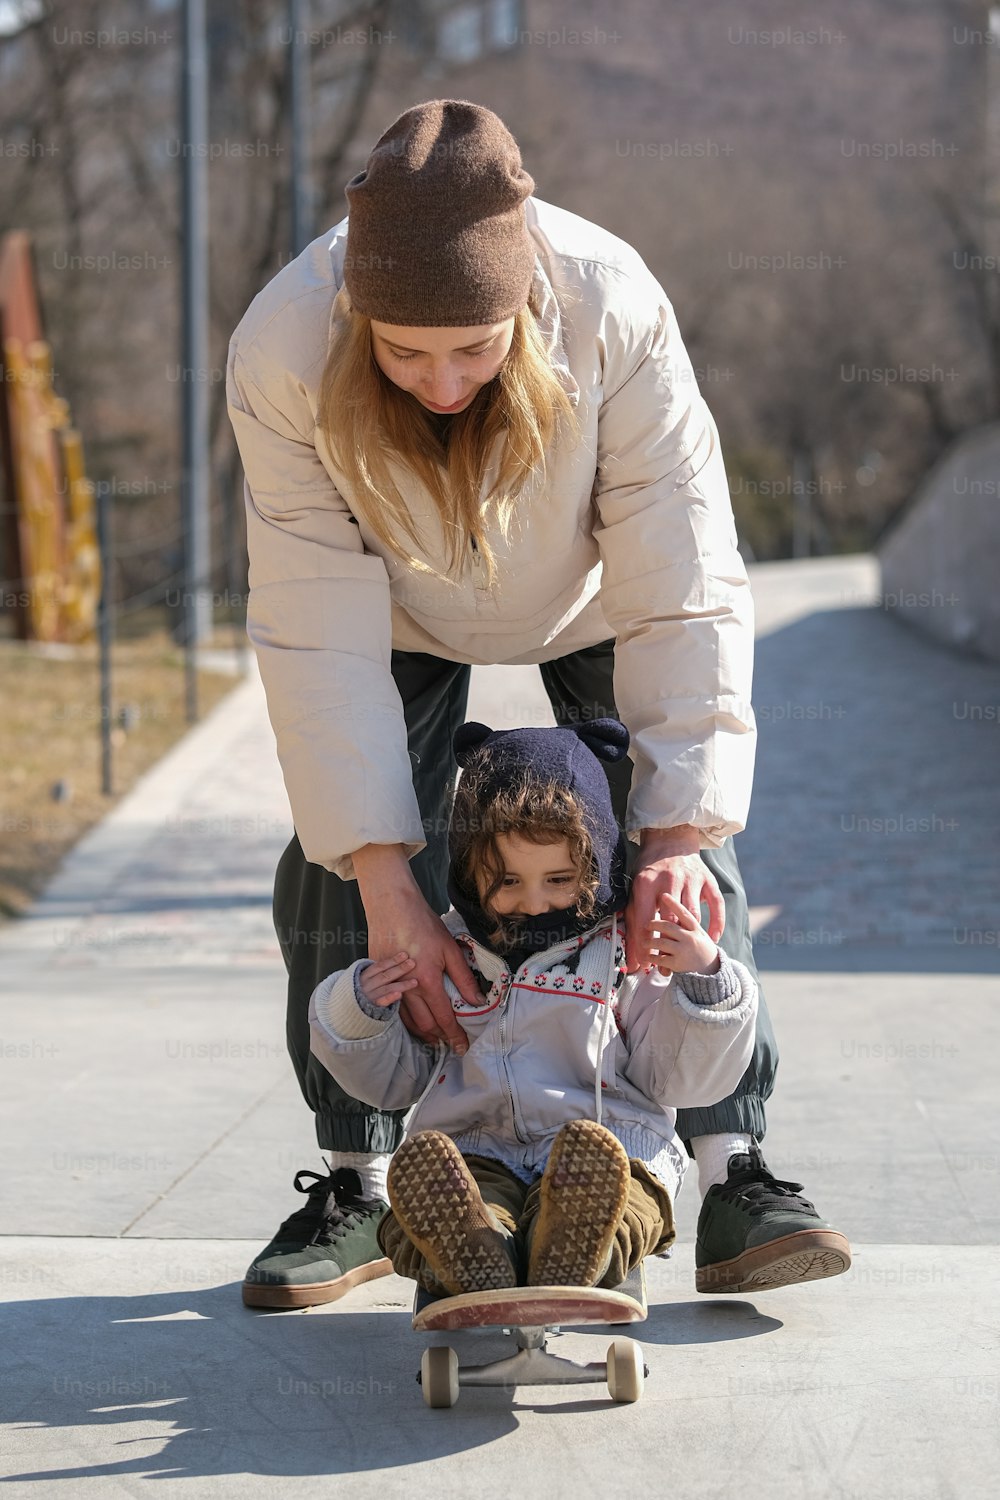 Eine Frau, die einem Kind beim Skateboardfahren hilft